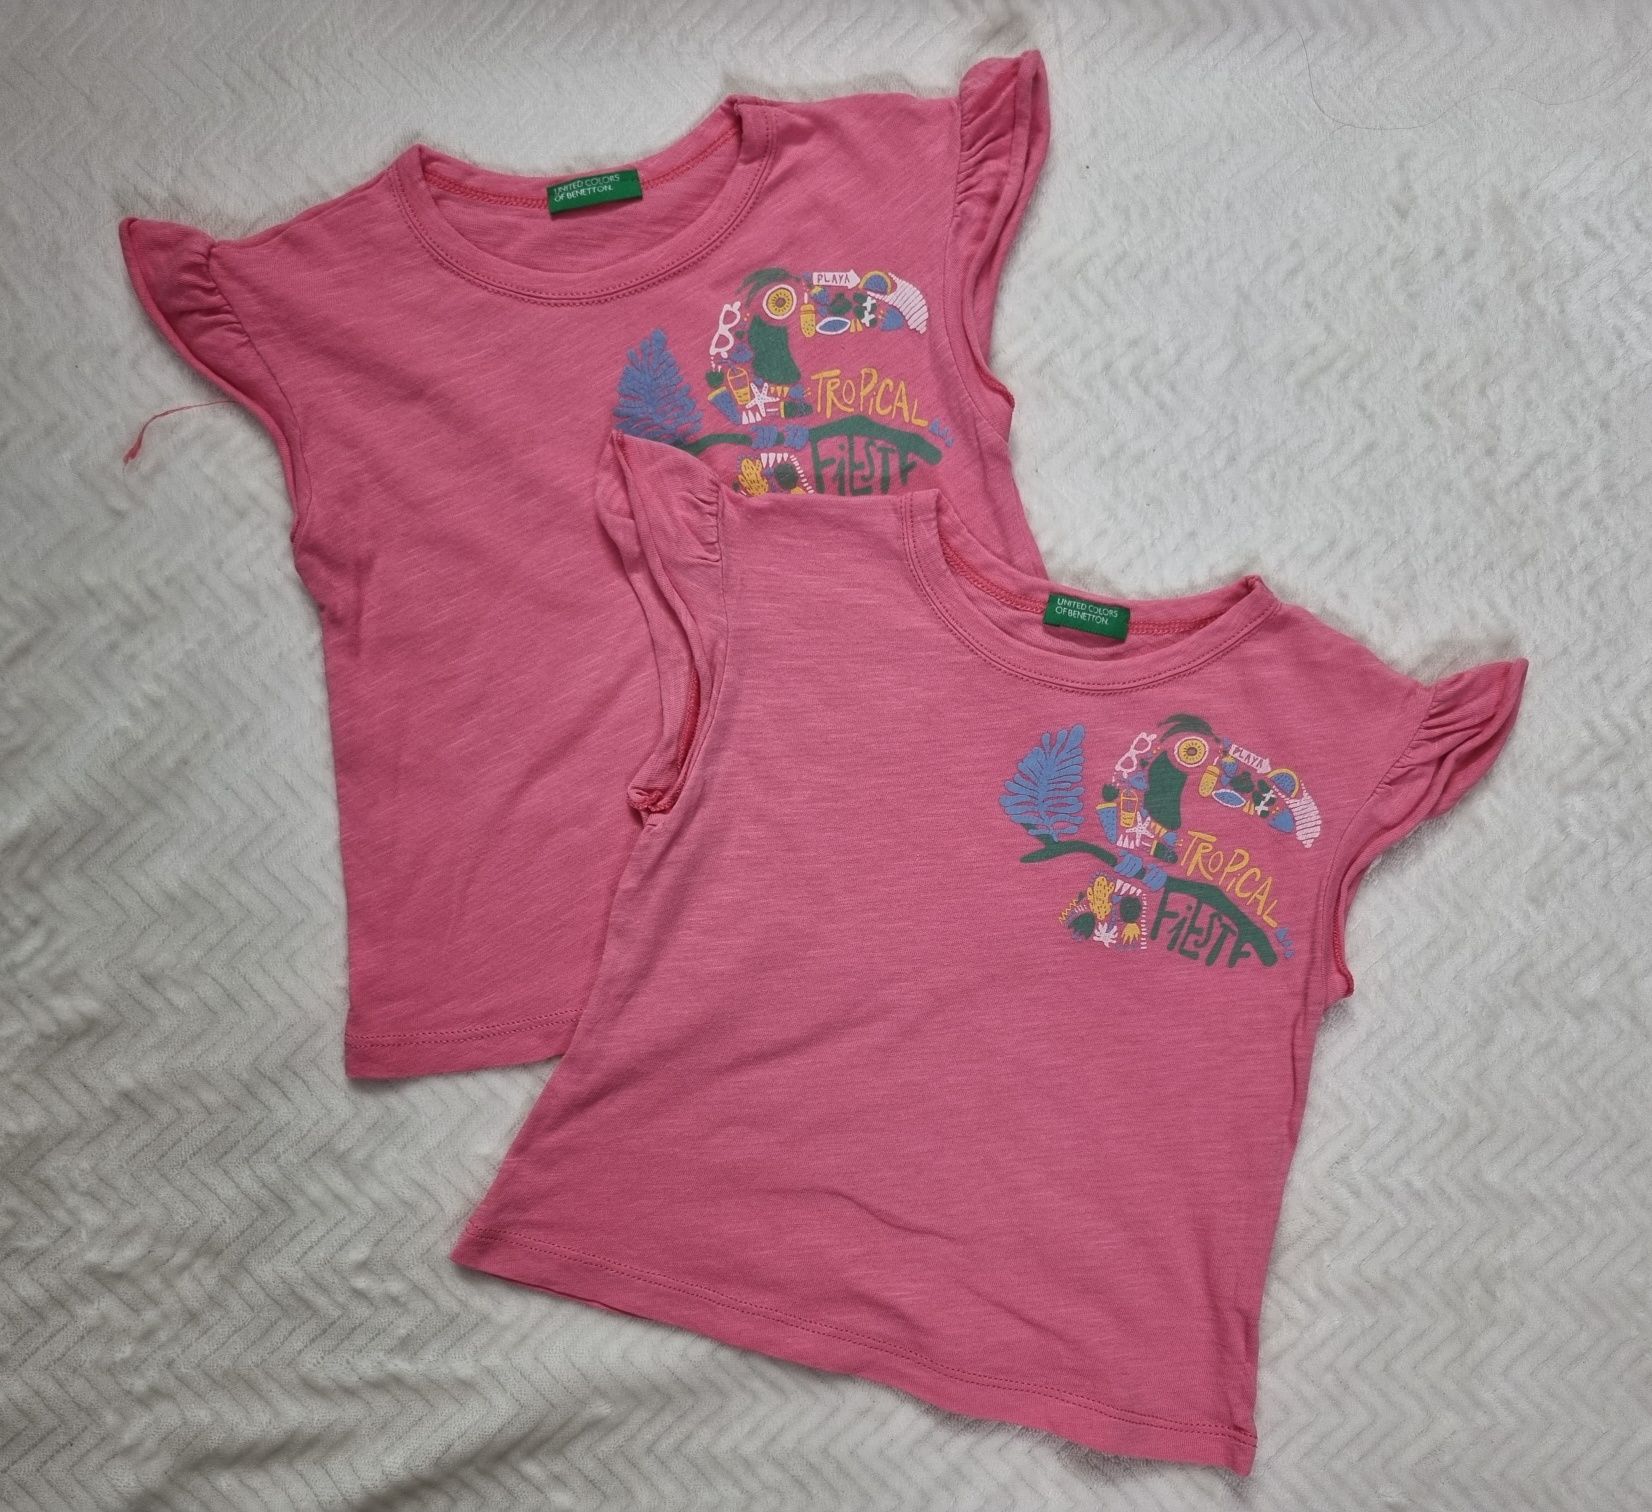 T-shirty 12 koszulek dziewczęcych rozmiar 80 Zara Okaidi Benetton